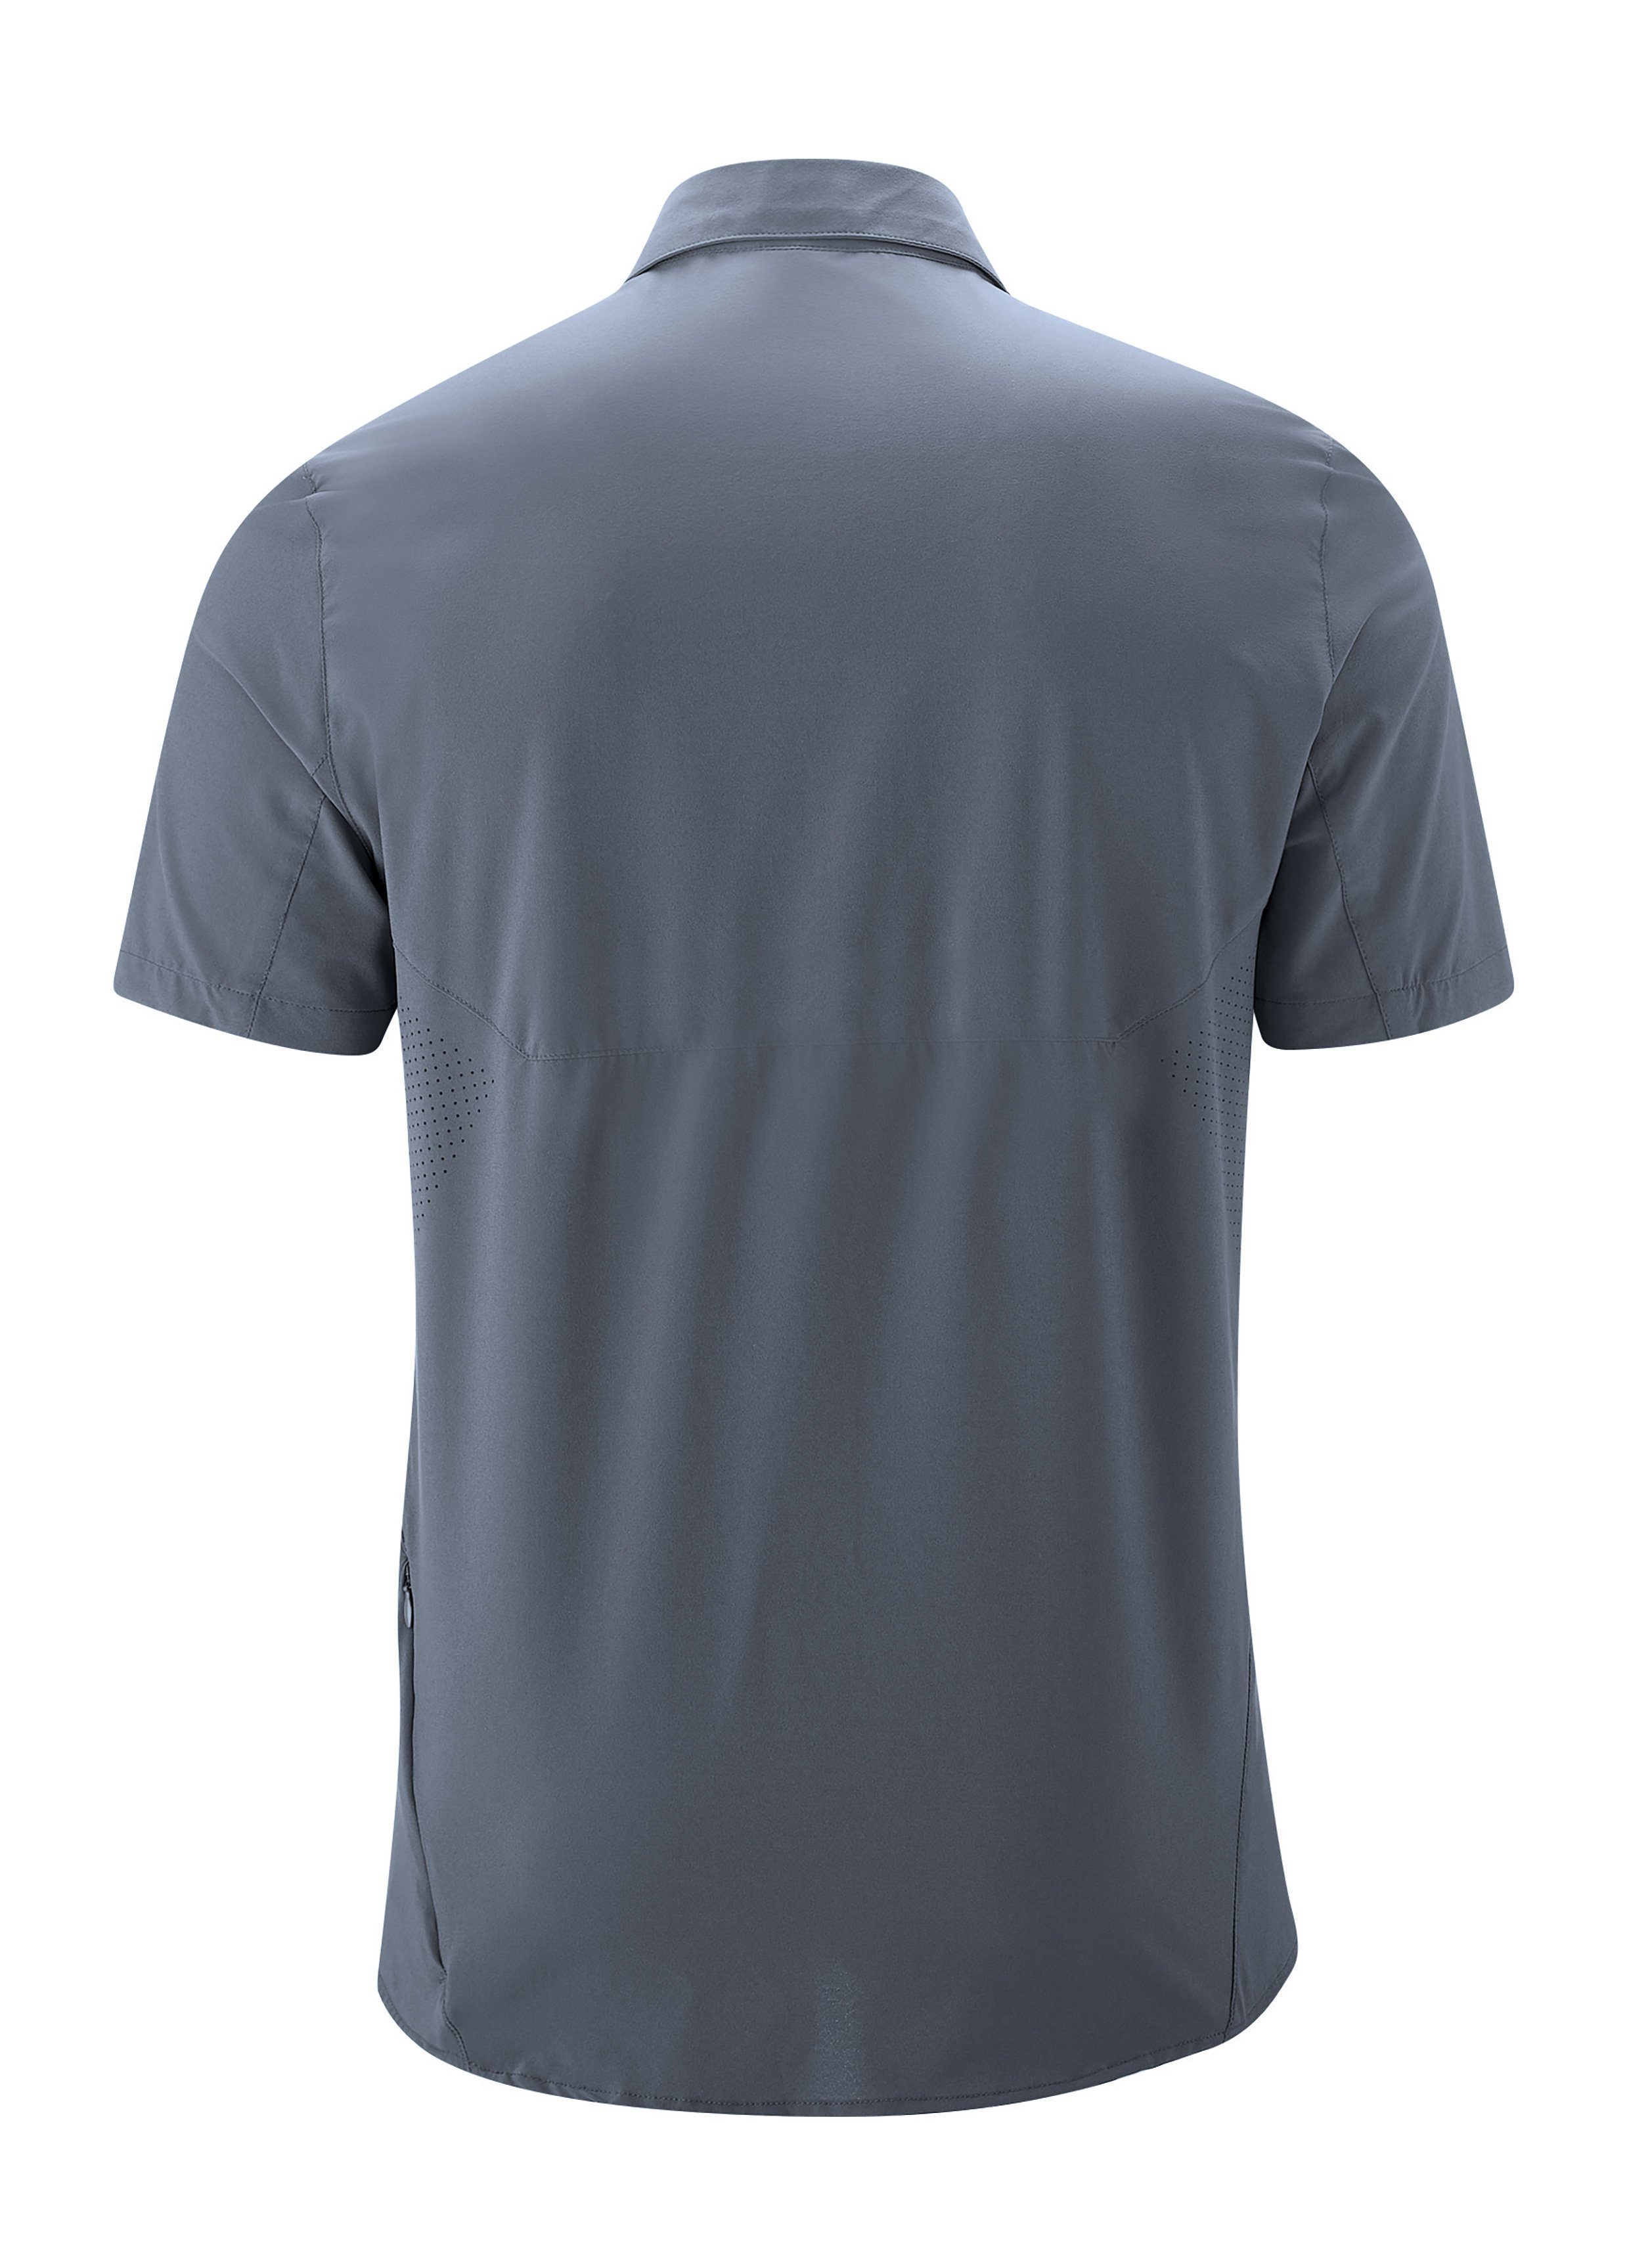 Trekkinghemd MS/S Sports Maier Tec Sinnes Funktionshemd Sonnenkragen graublau elastisches mit Leichtes,